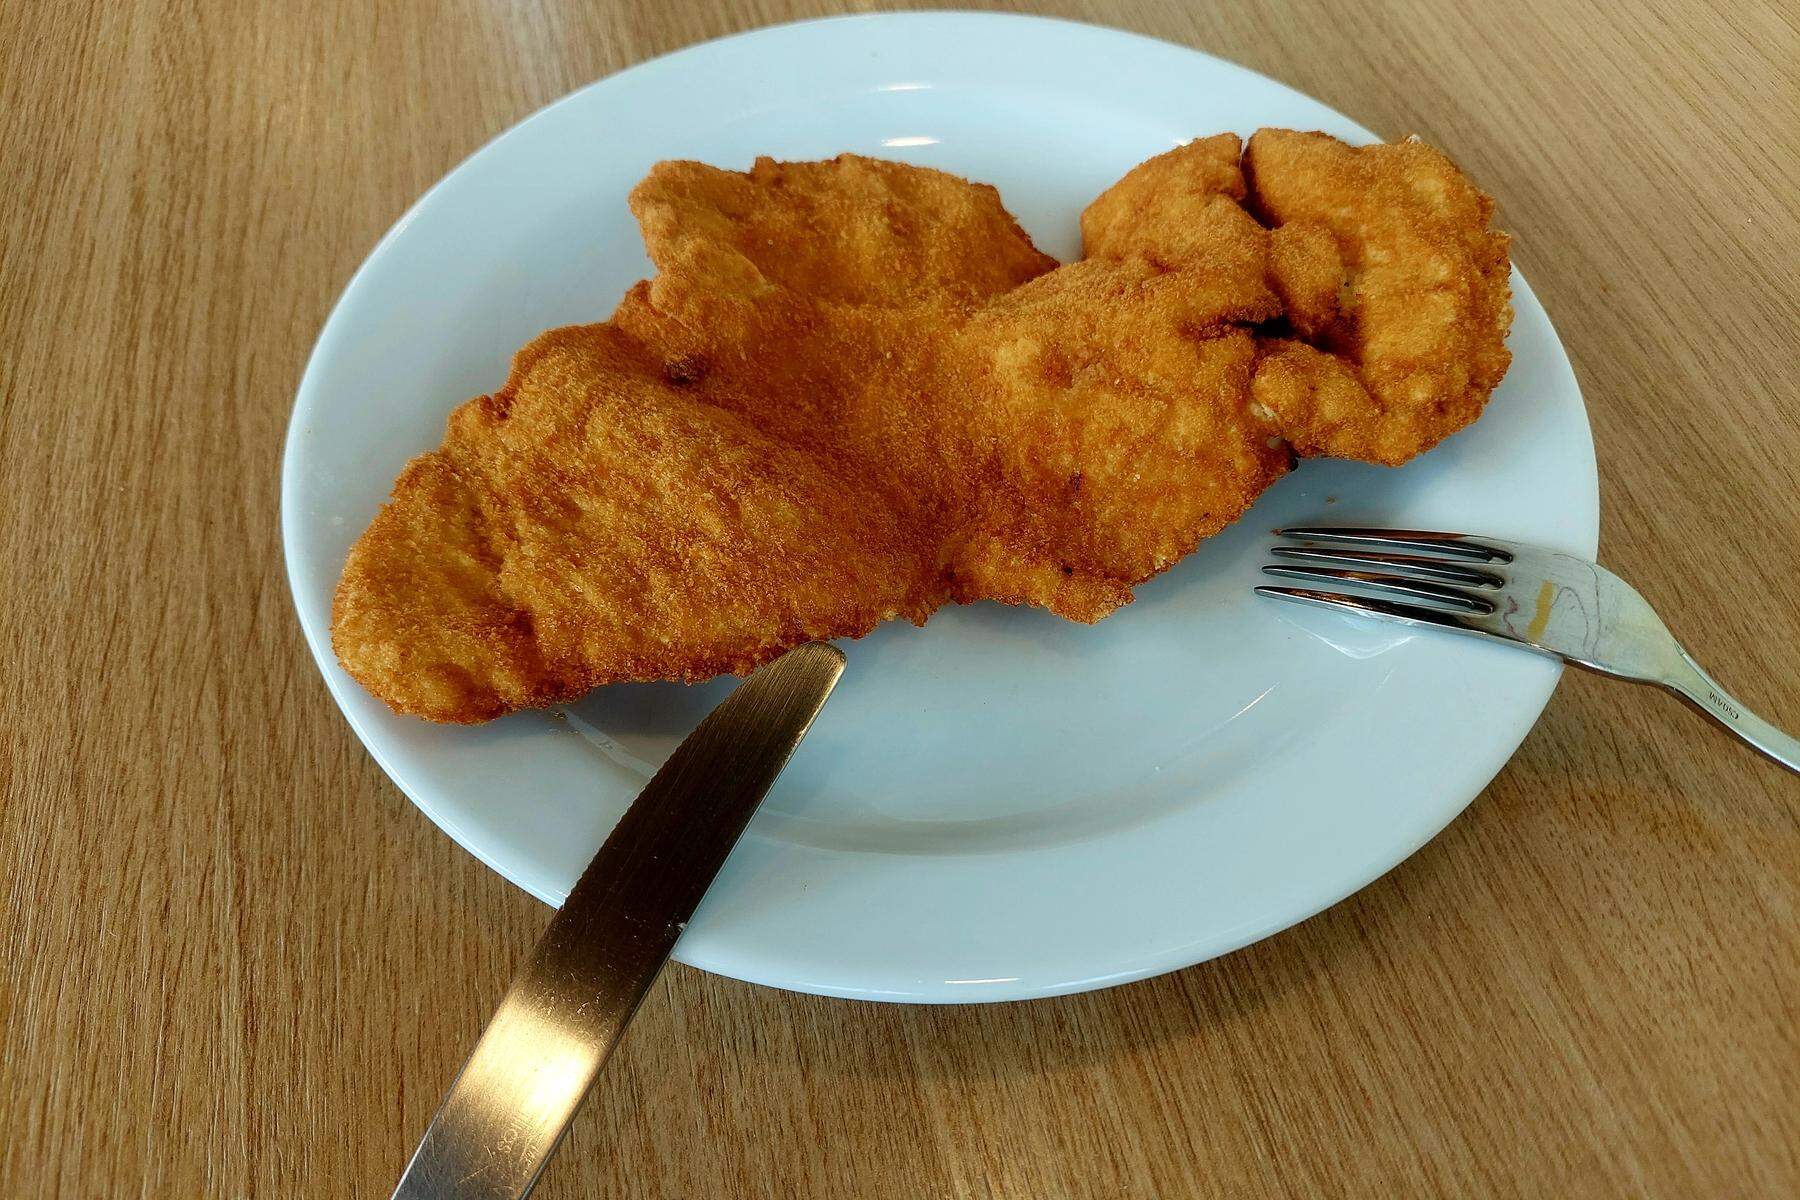 Bauern orten Betrug: Oststeirisches Restaurant hat deutsches Putenfleisch als steirisches verkauft